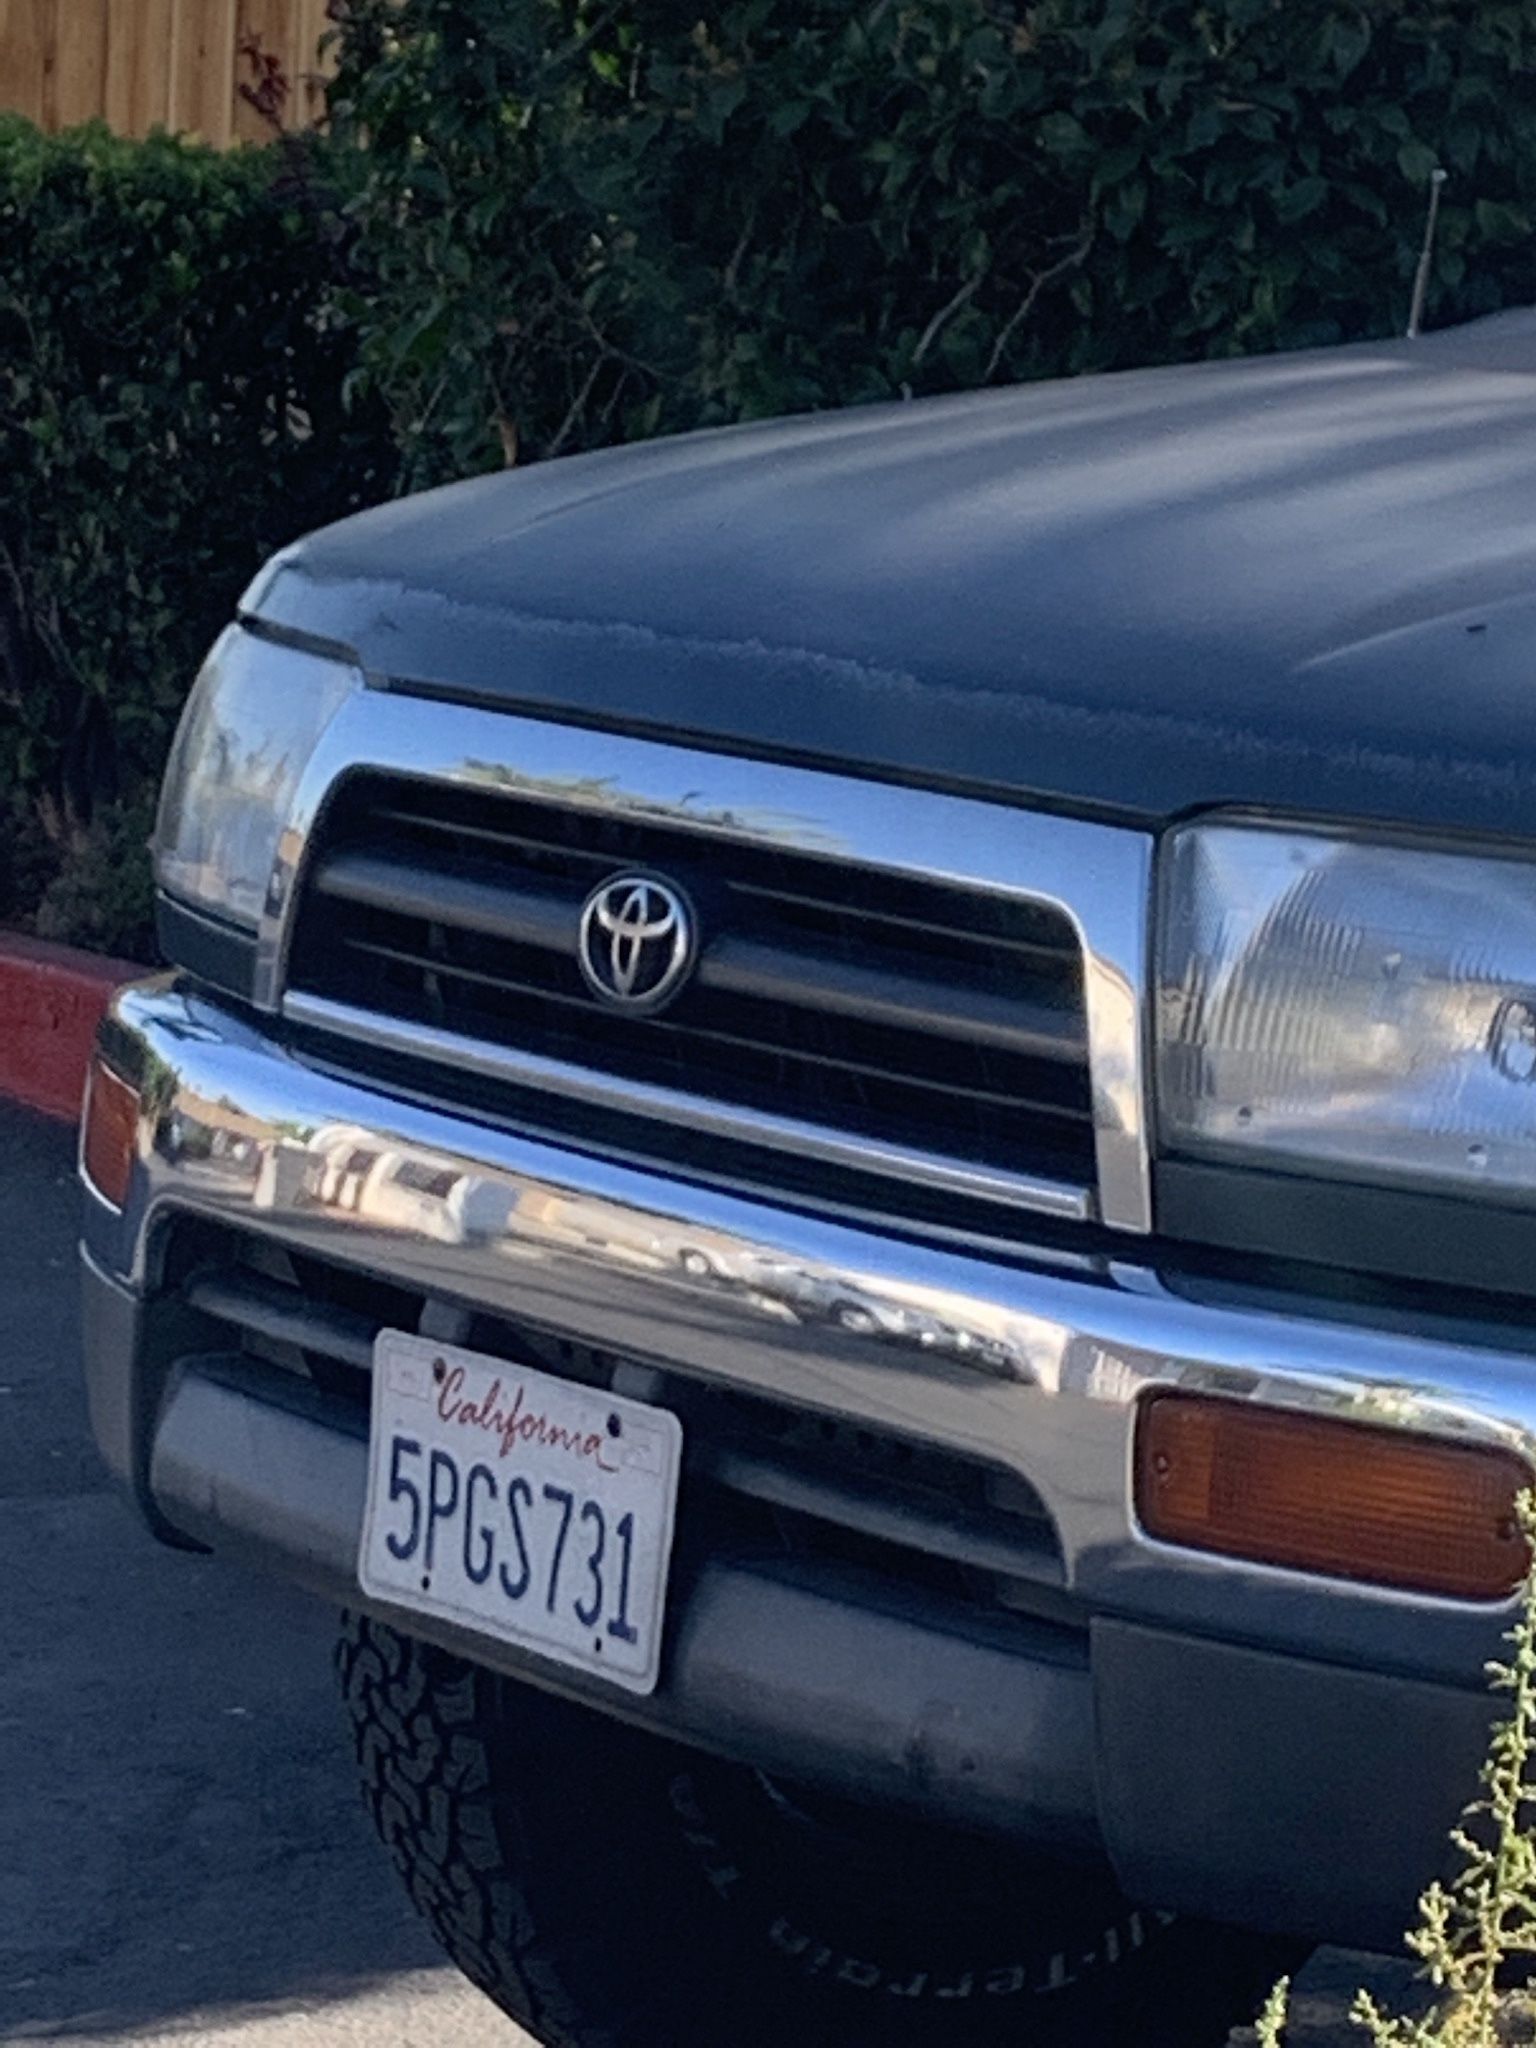 1998 Toyota 4Runner